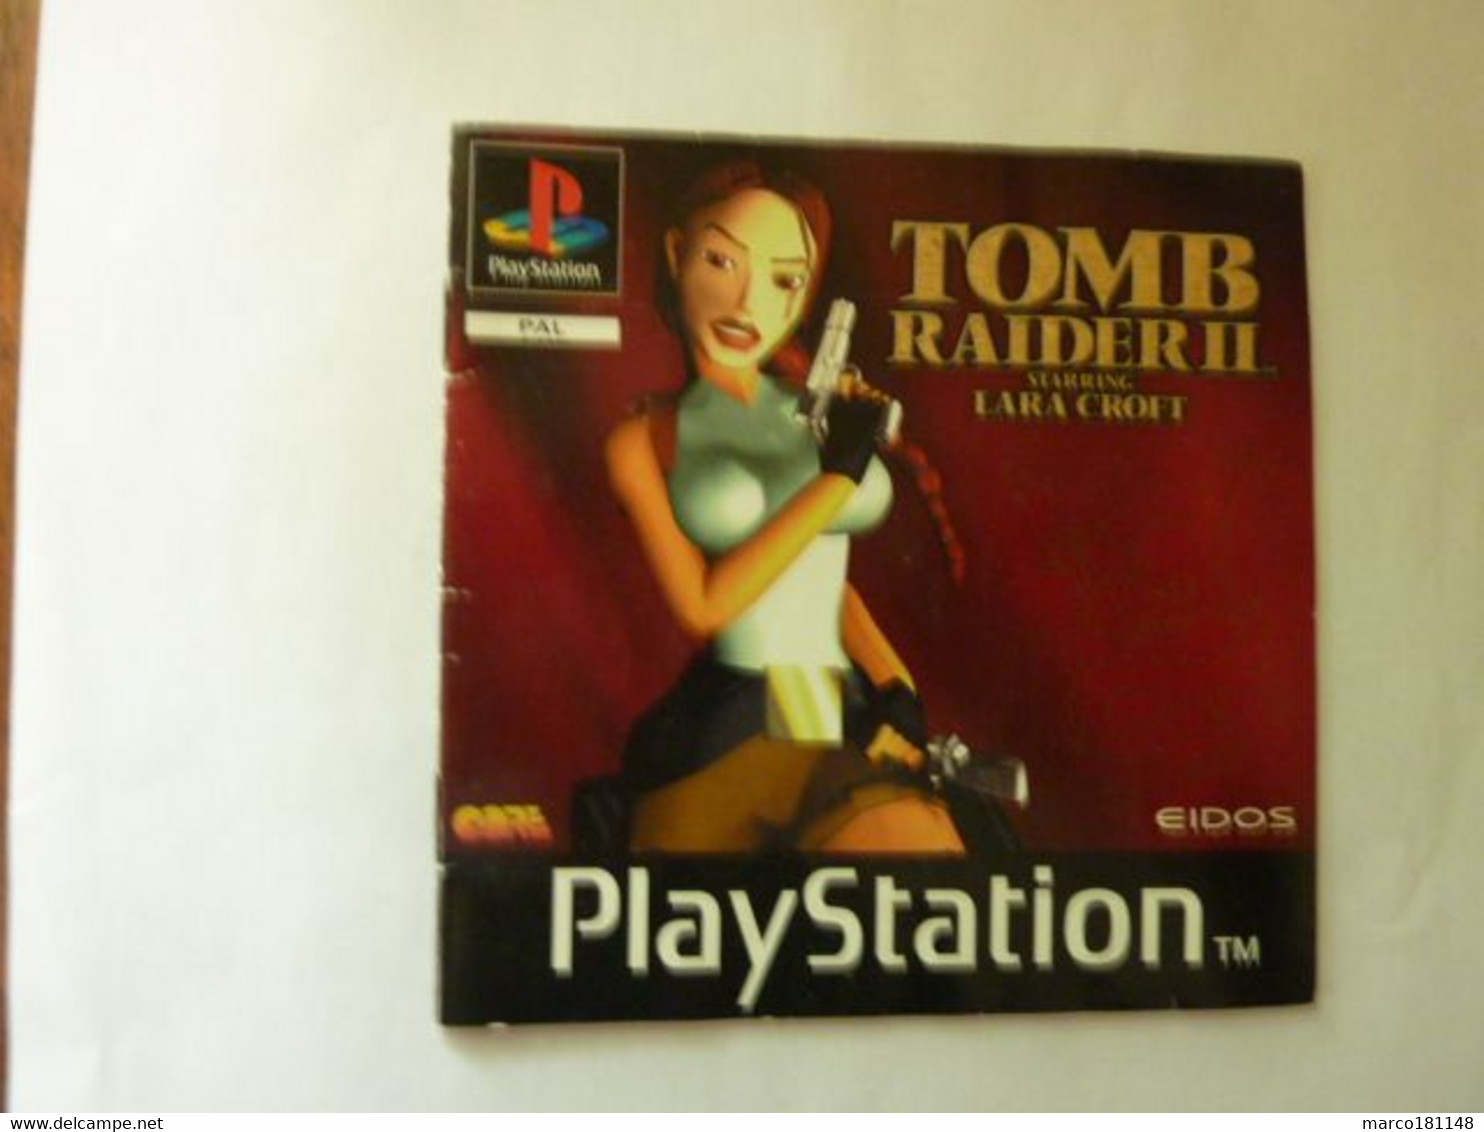 Livret PlayStation - TOMB RAIDER II Starring LARA CROFT - Accessori